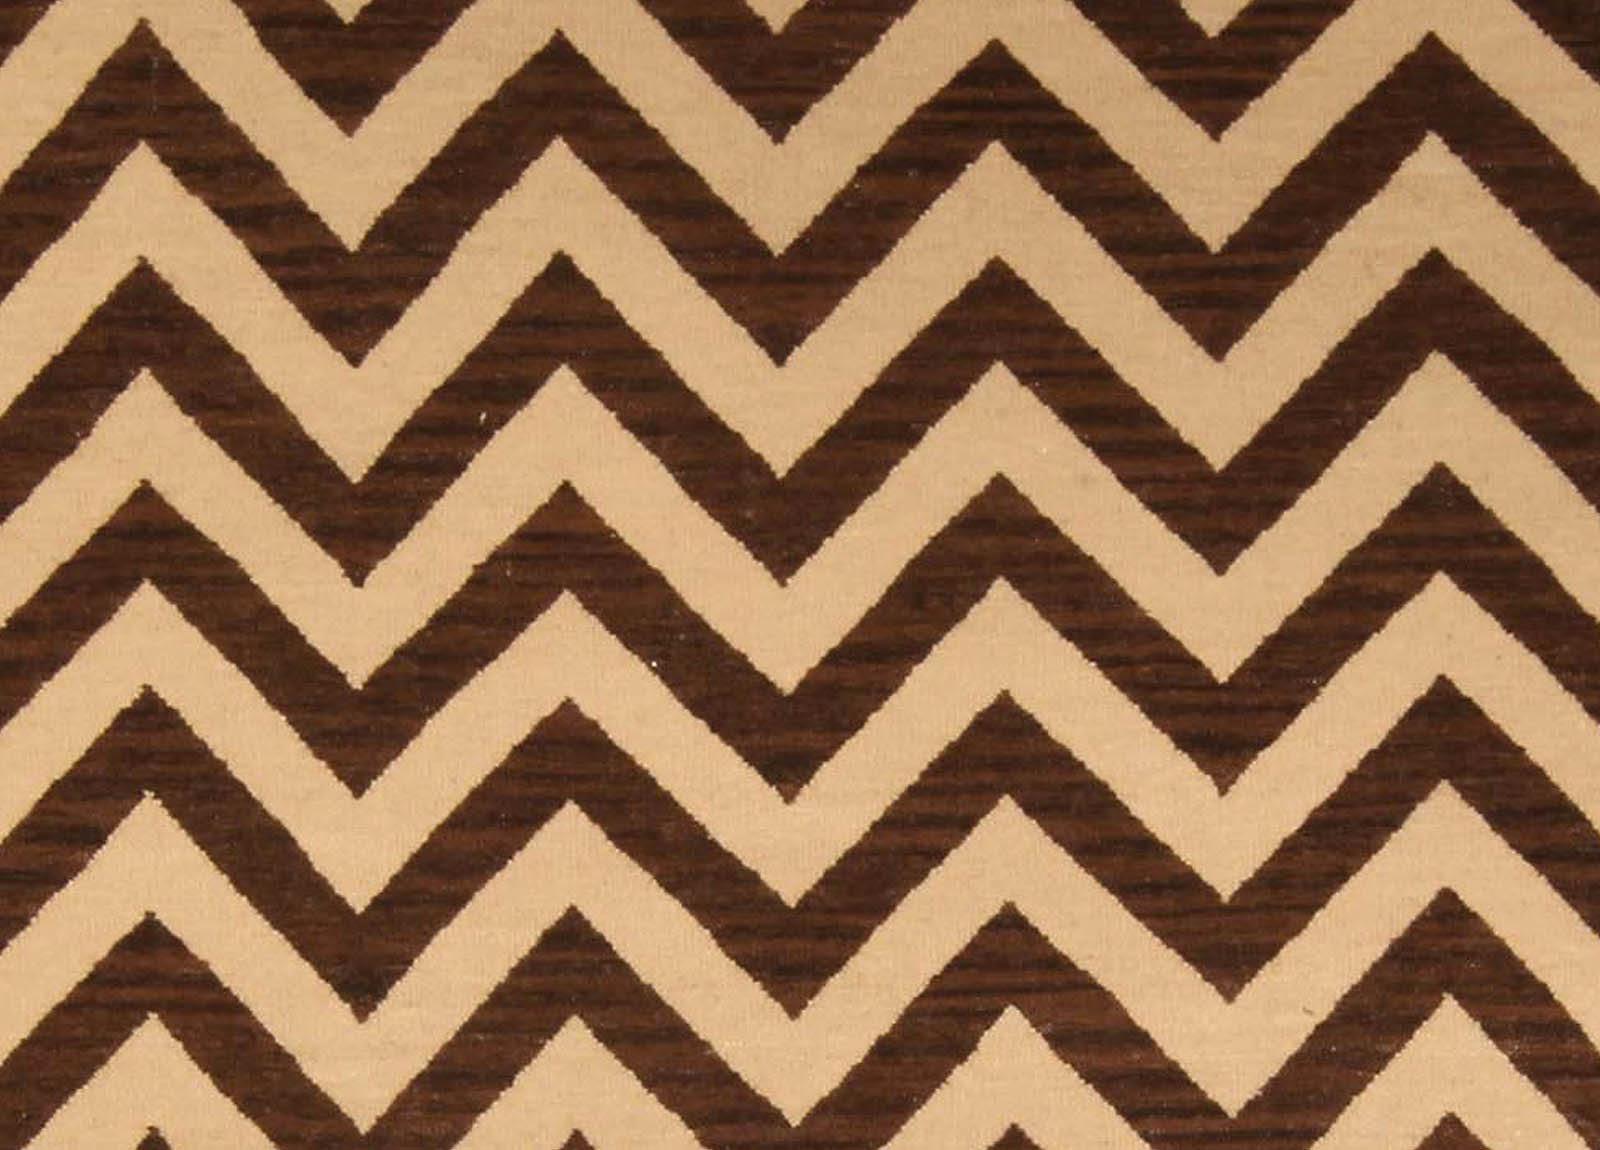 Modern Zig-Zag design handmade wool rug in brown and beige by Doris Leslie Blau
Size: 7.8